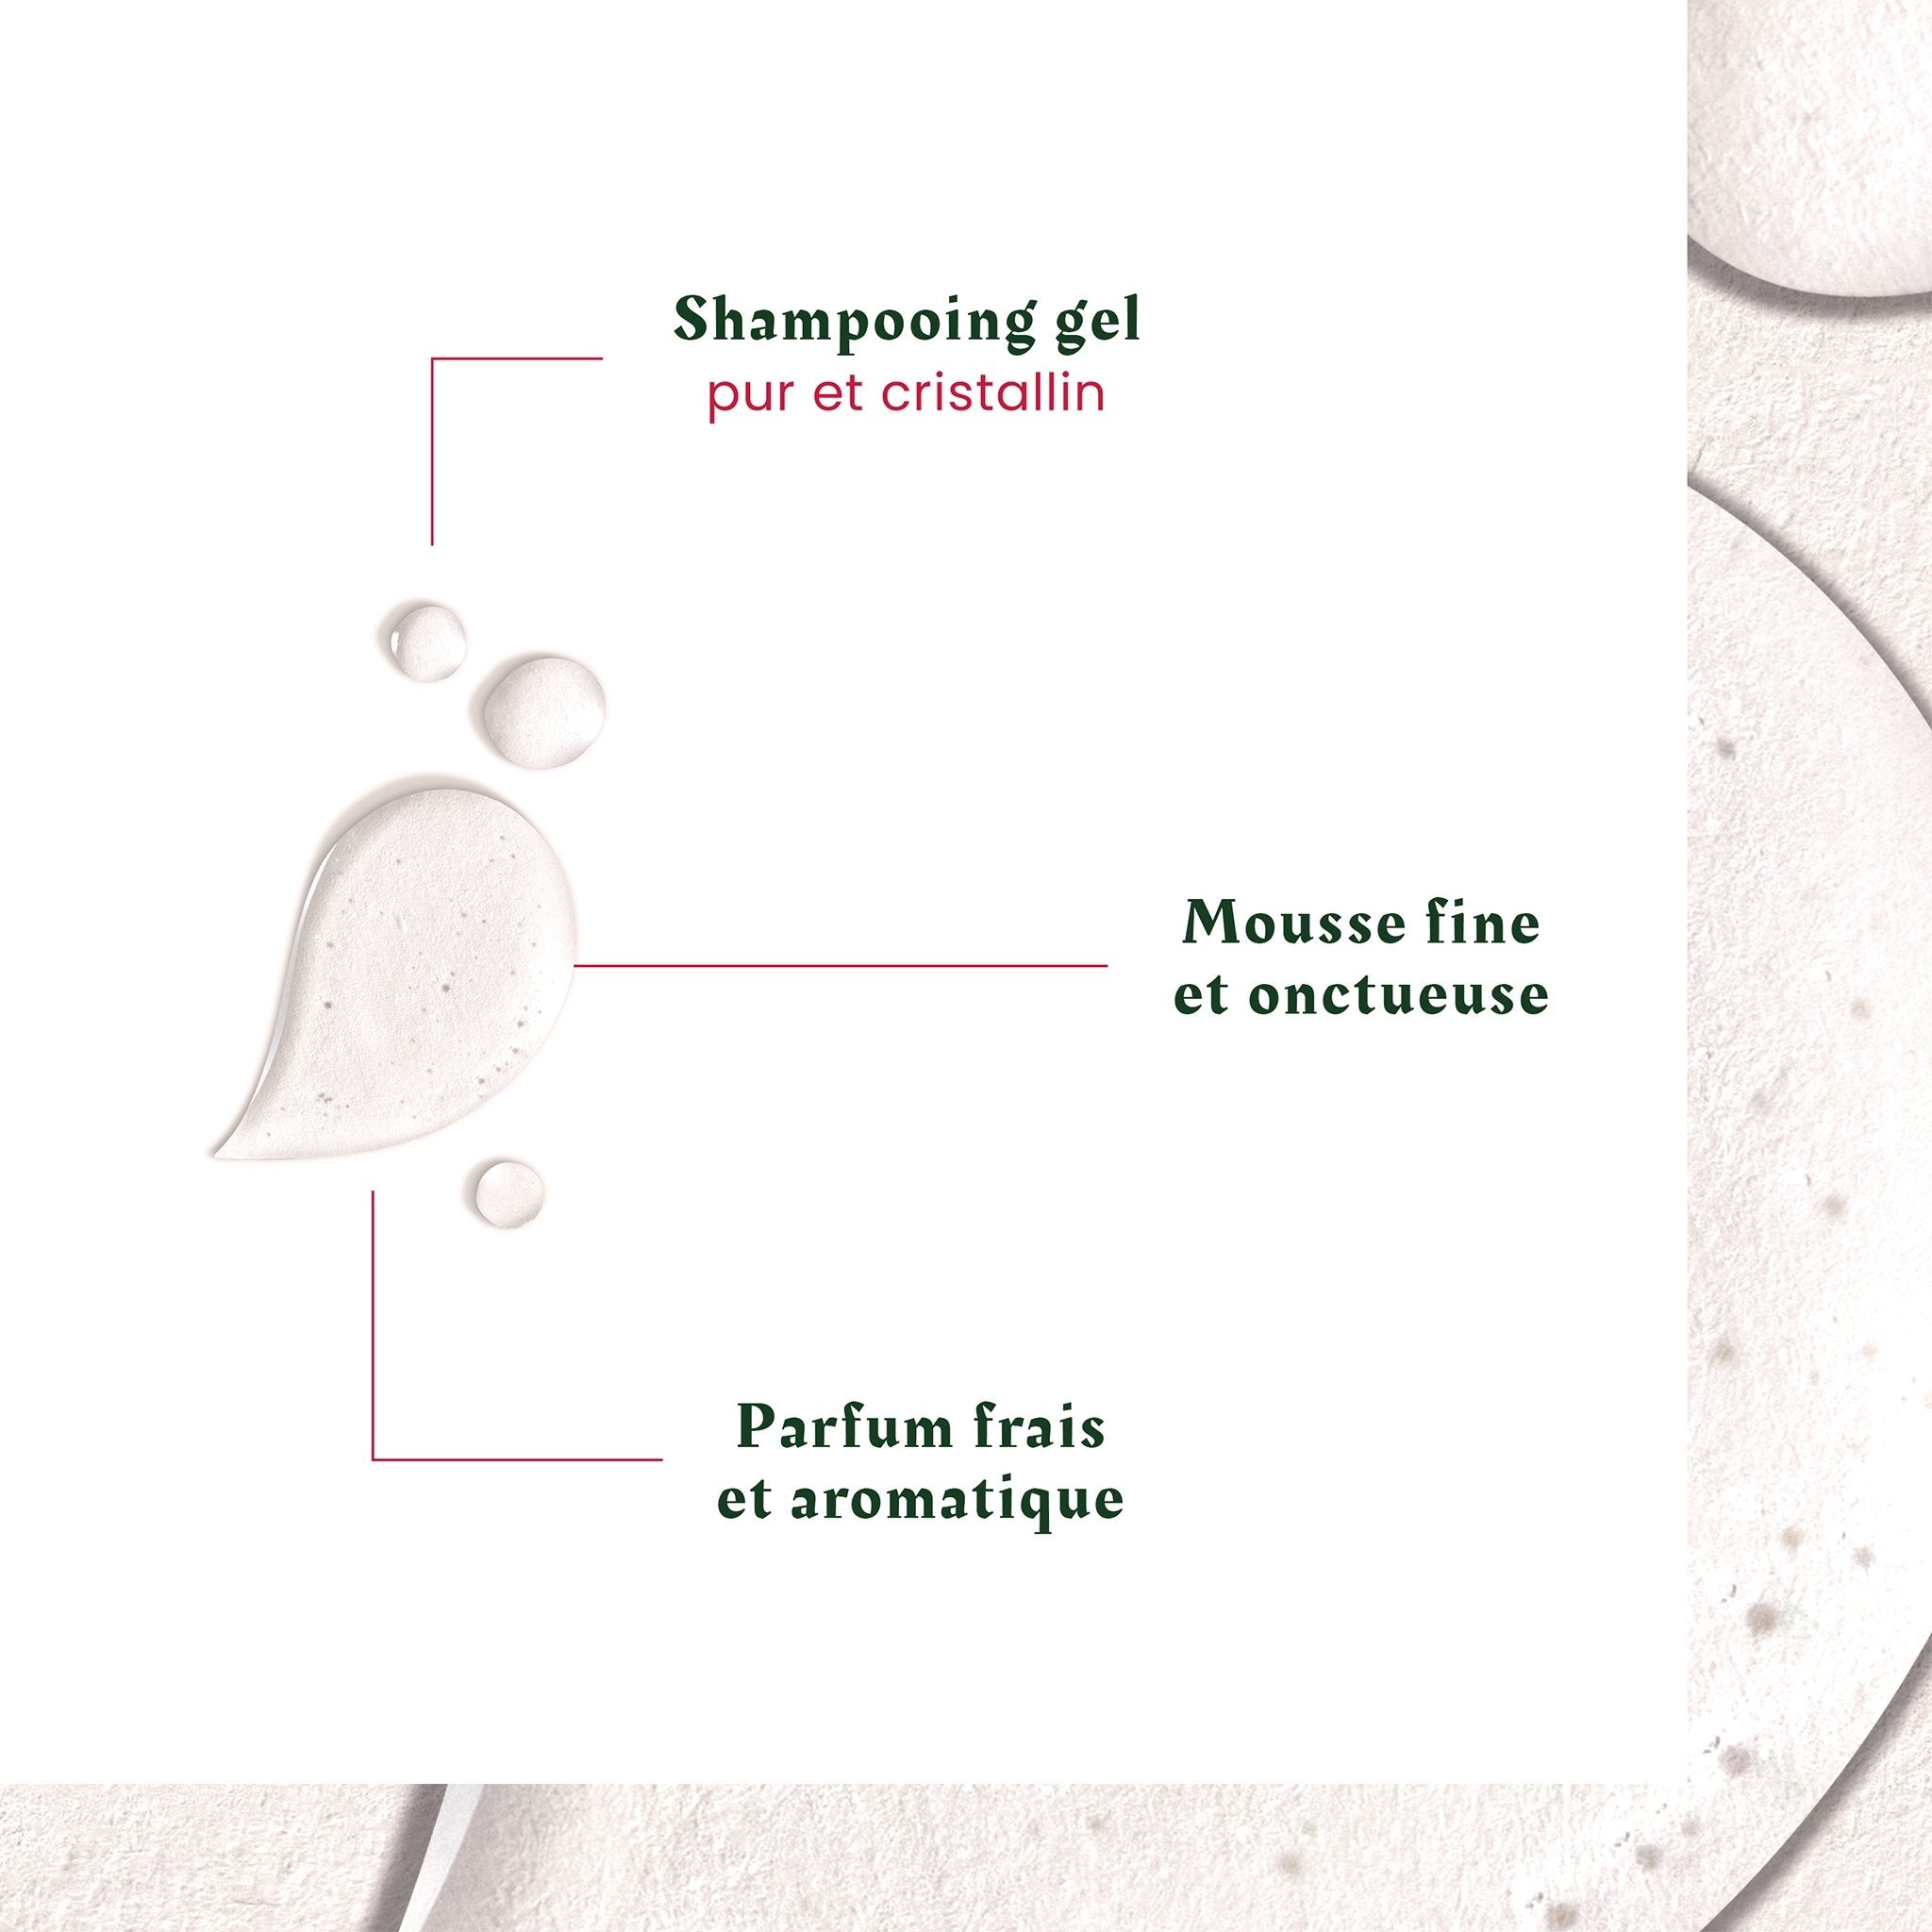 René Furterer. Neopur Shampoing Équilibrant Cuir Chevelu Gras - 250 ml - Concept C. Shop